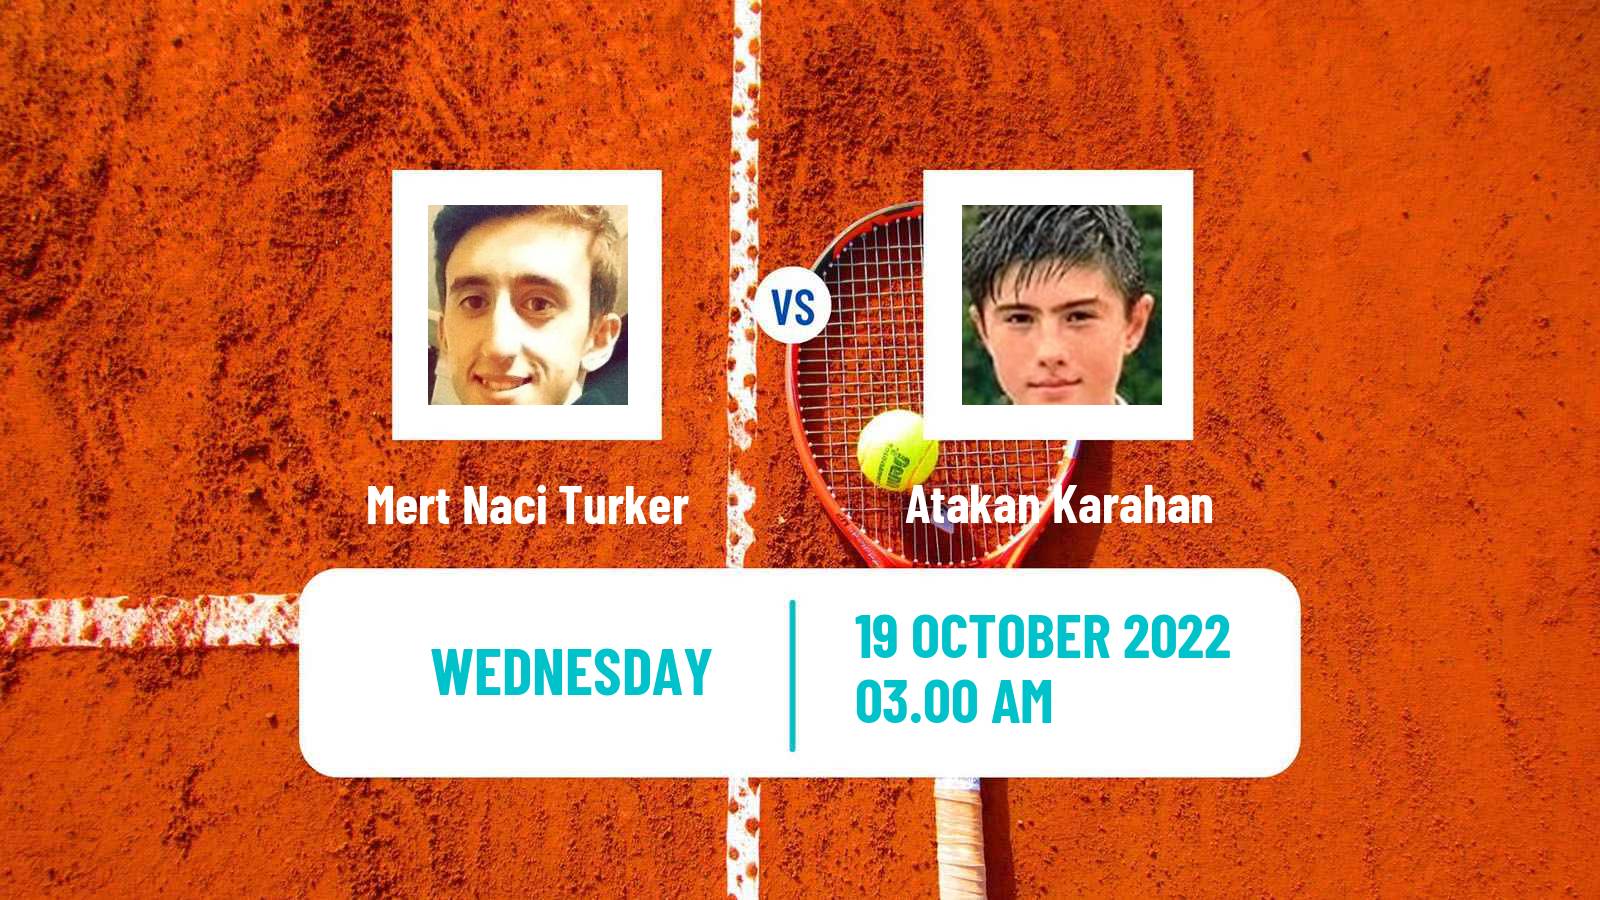 Tennis ITF Tournaments Mert Naci Turker - Atakan Karahan